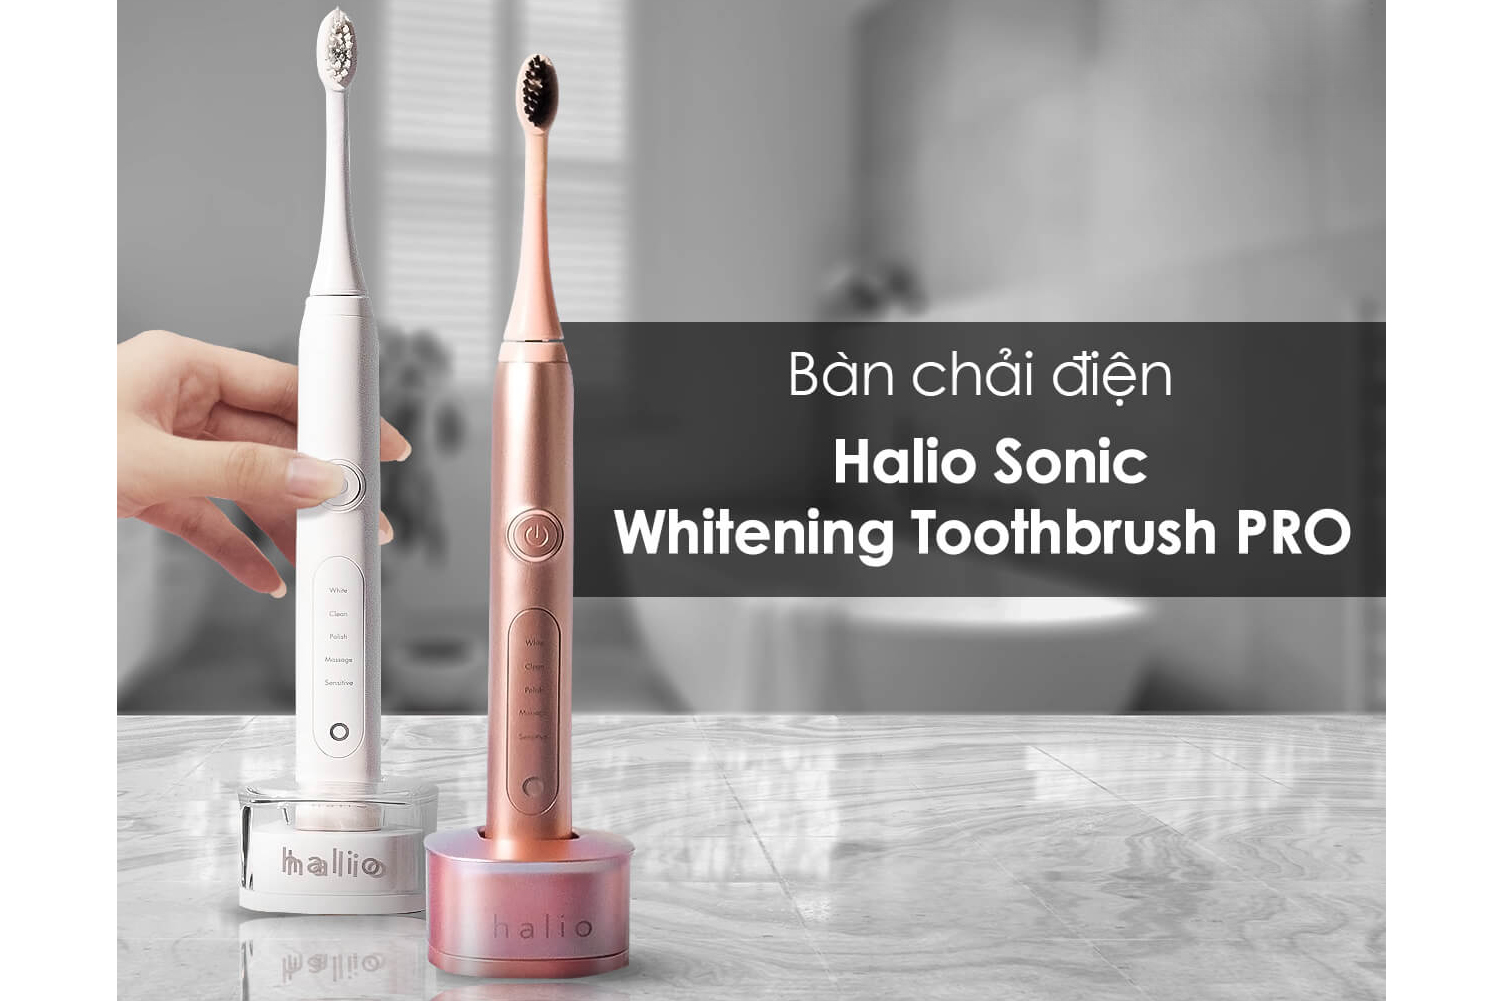 Bàn chải điện Halio Sonic Whitening Toothbrush PRO